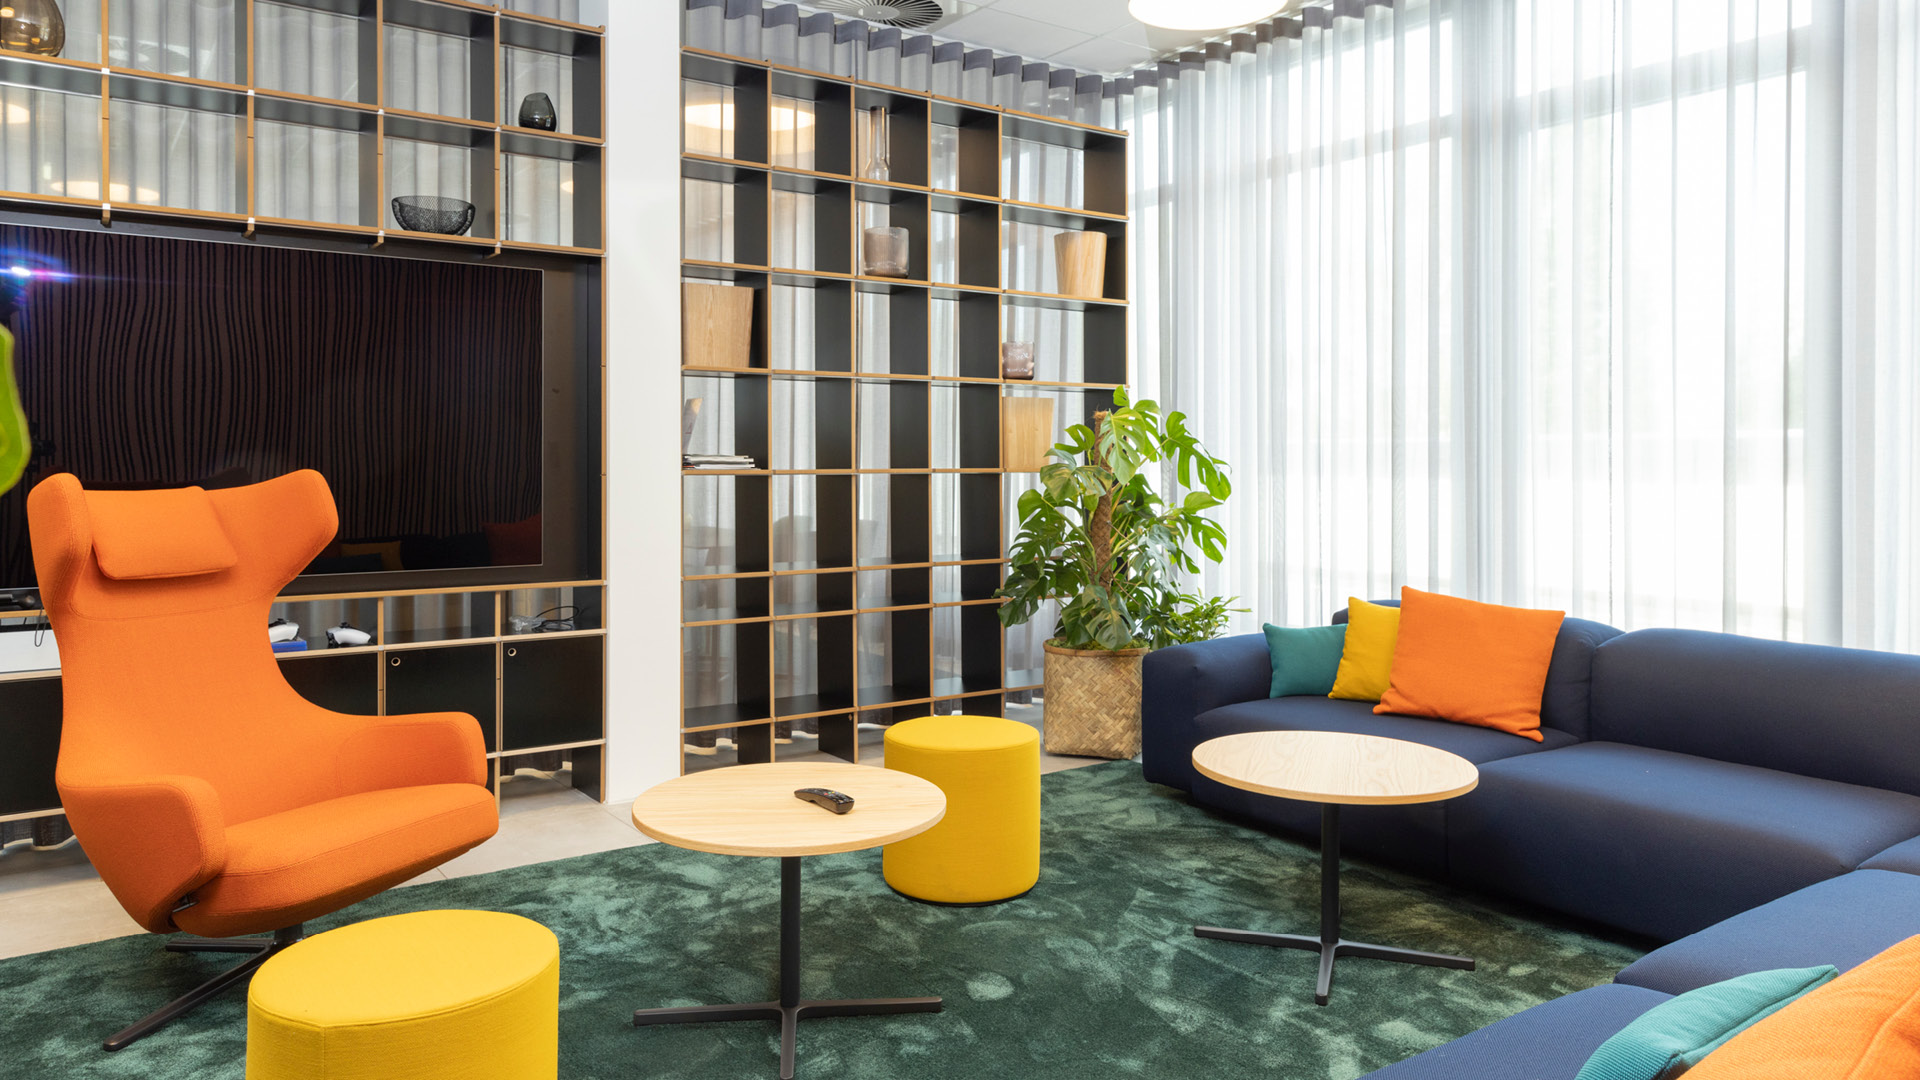 projekt k Referenz Markilux Lounge für Kundengespräche mit Vitra Sofa unf Sessel in orange